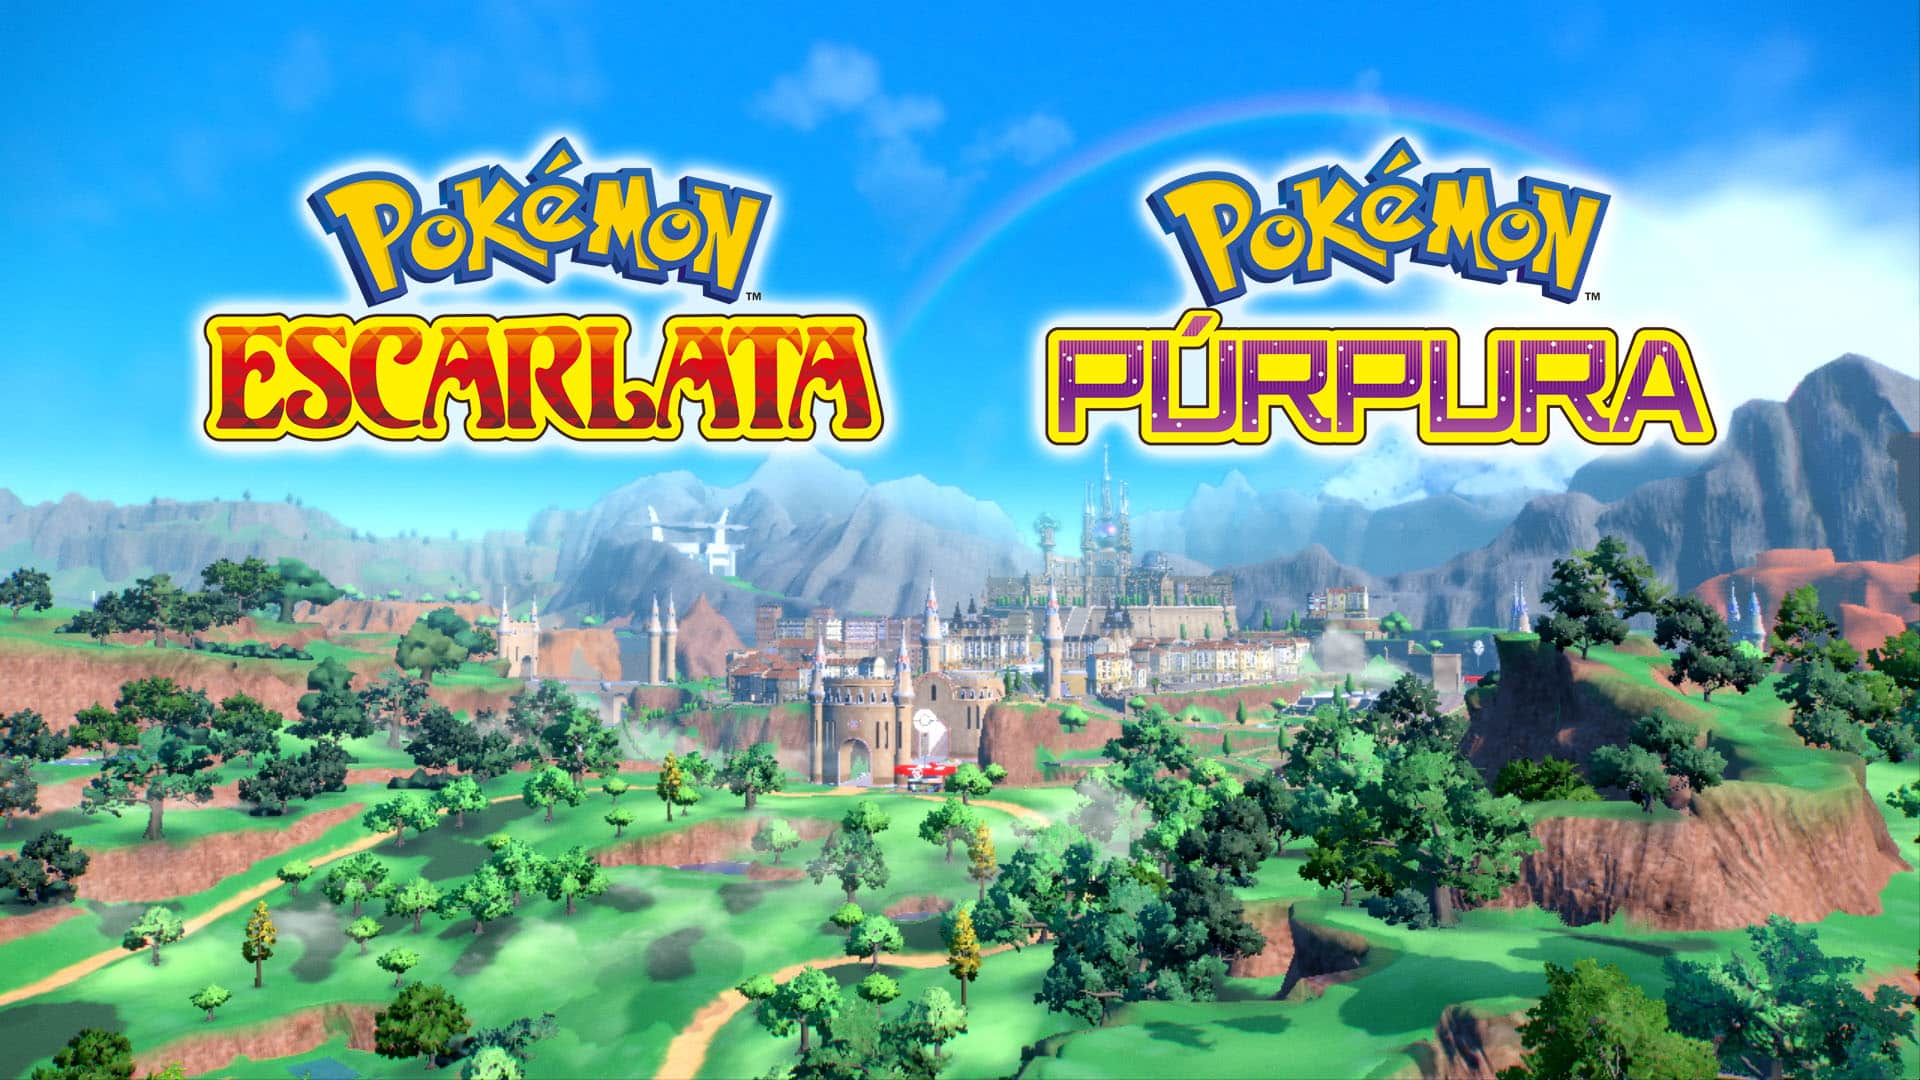 Pokémon confirmados escarlata y purpura